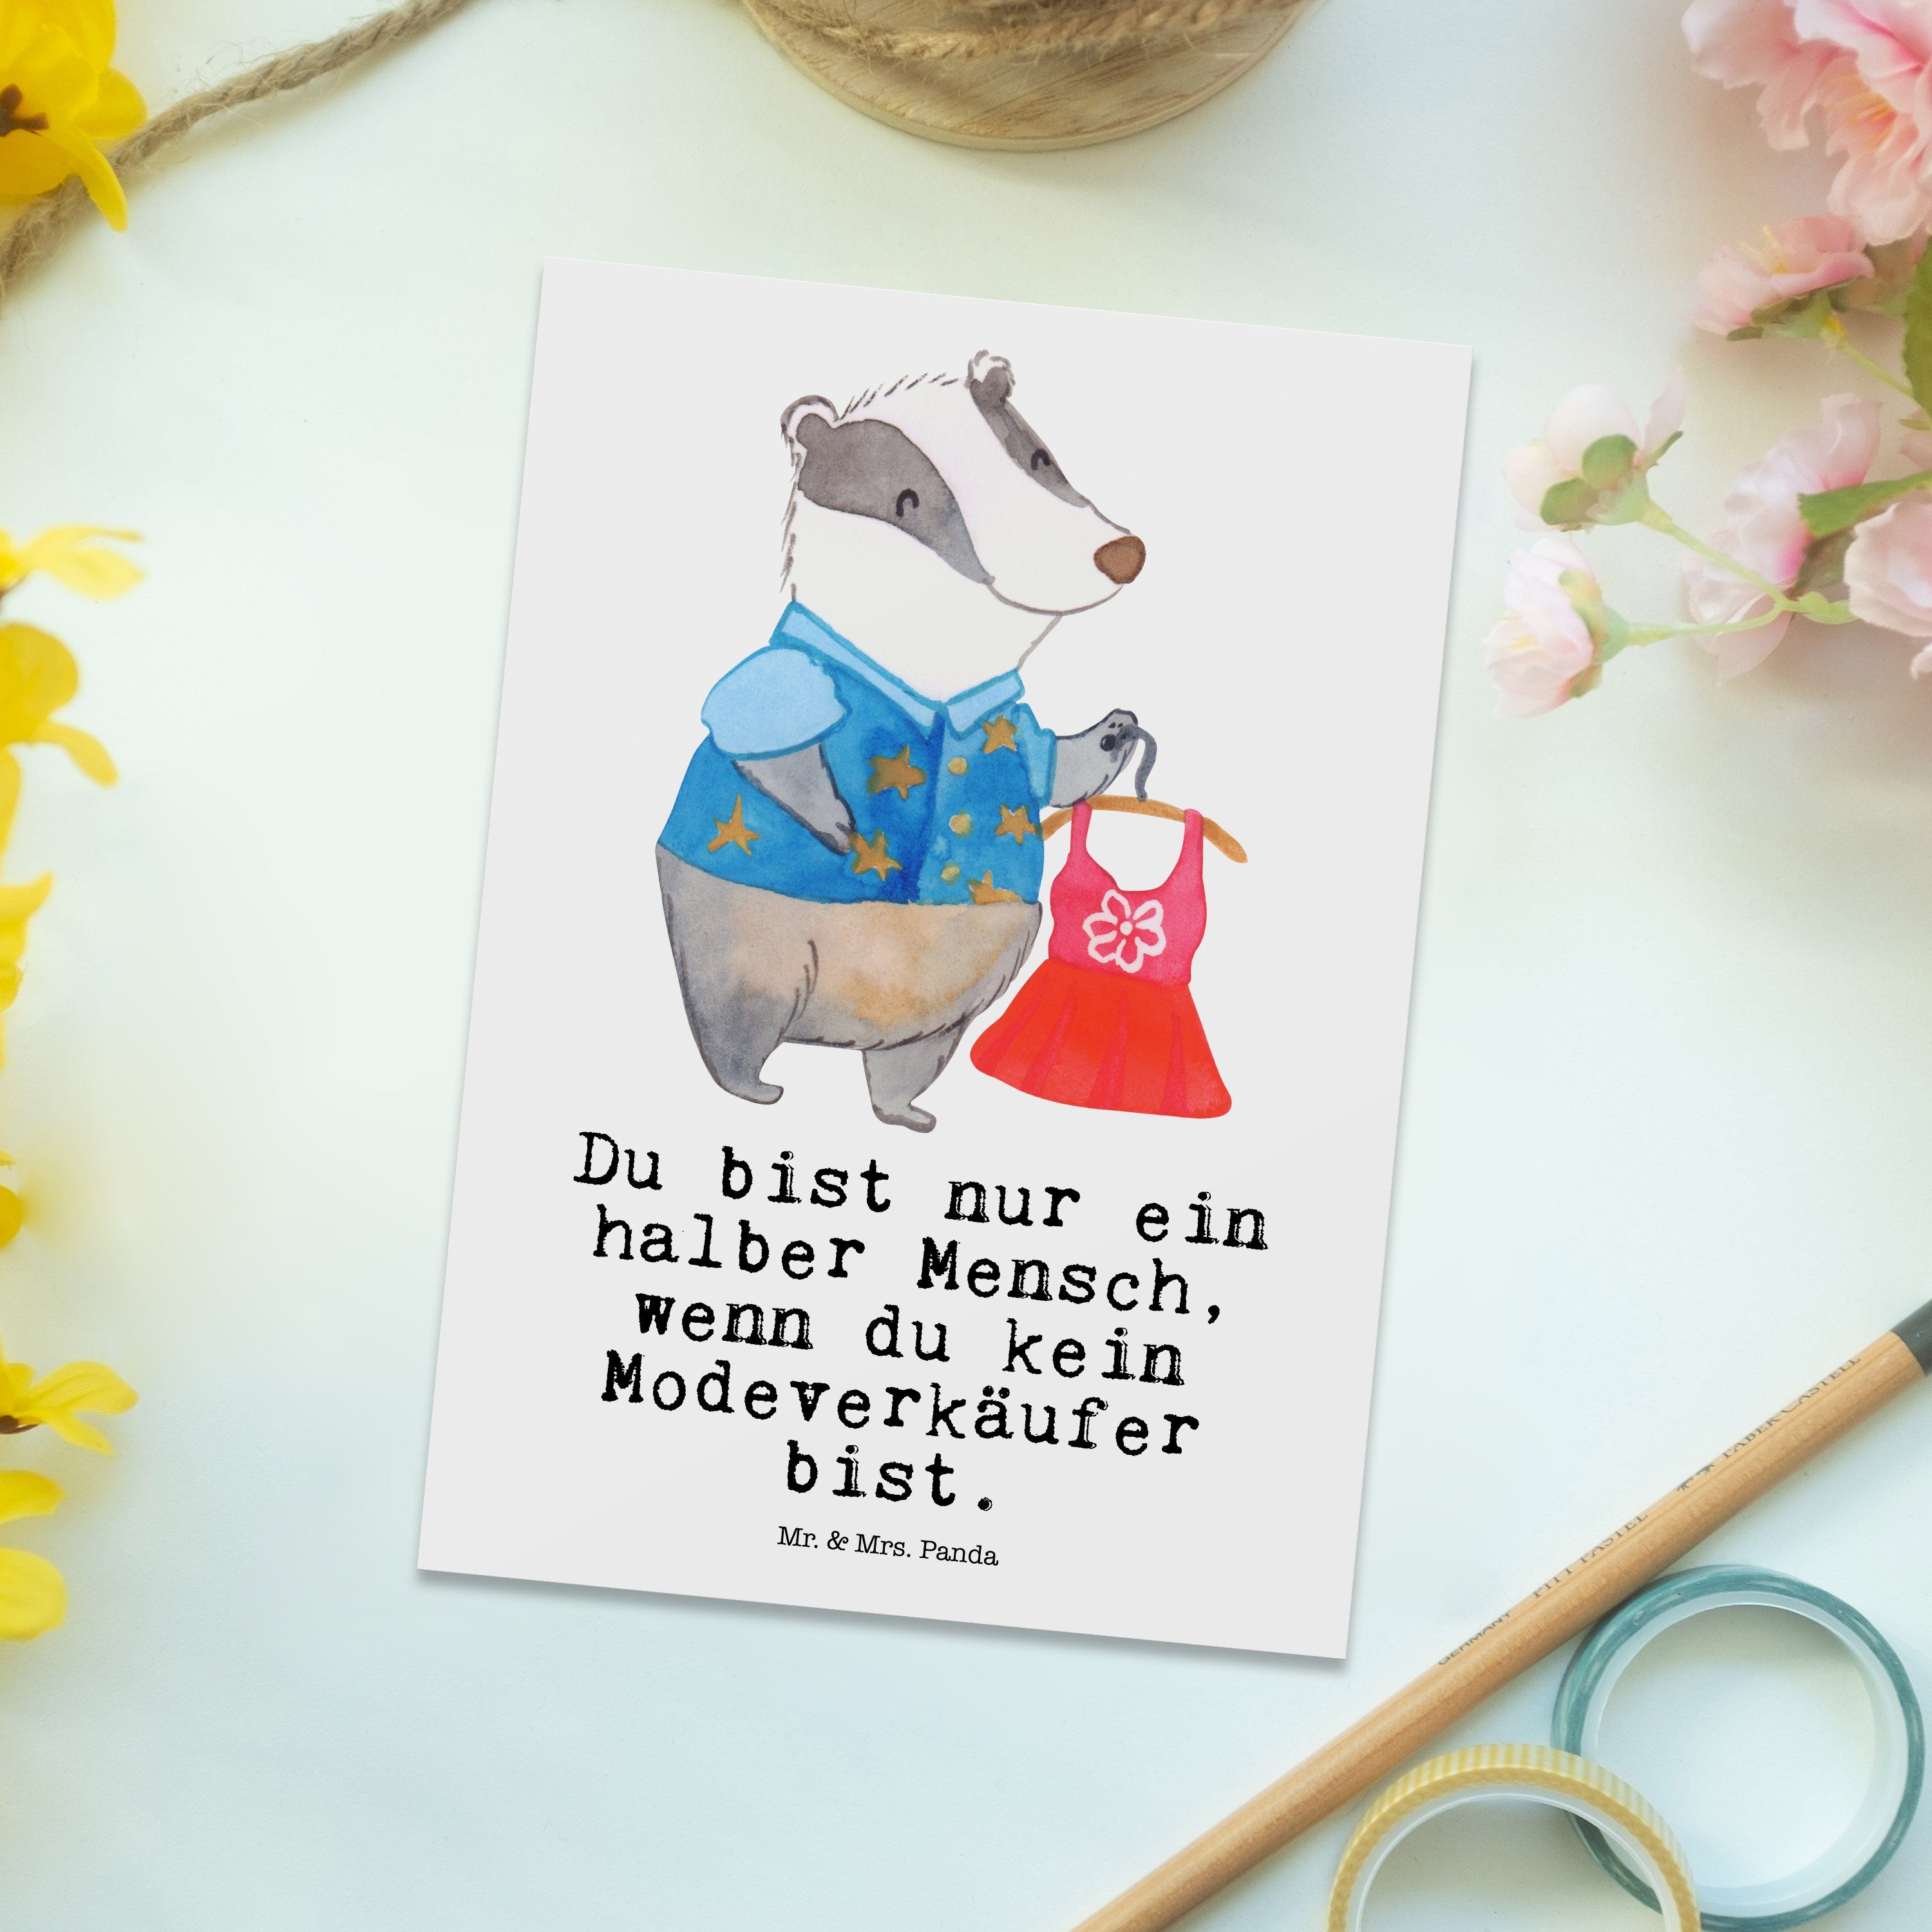 Mr. & Mrs. Panda Postkarte Fashion Modeverkäufer - Dankeskarte, - mit Geschenk, Rente, Herz Weiß